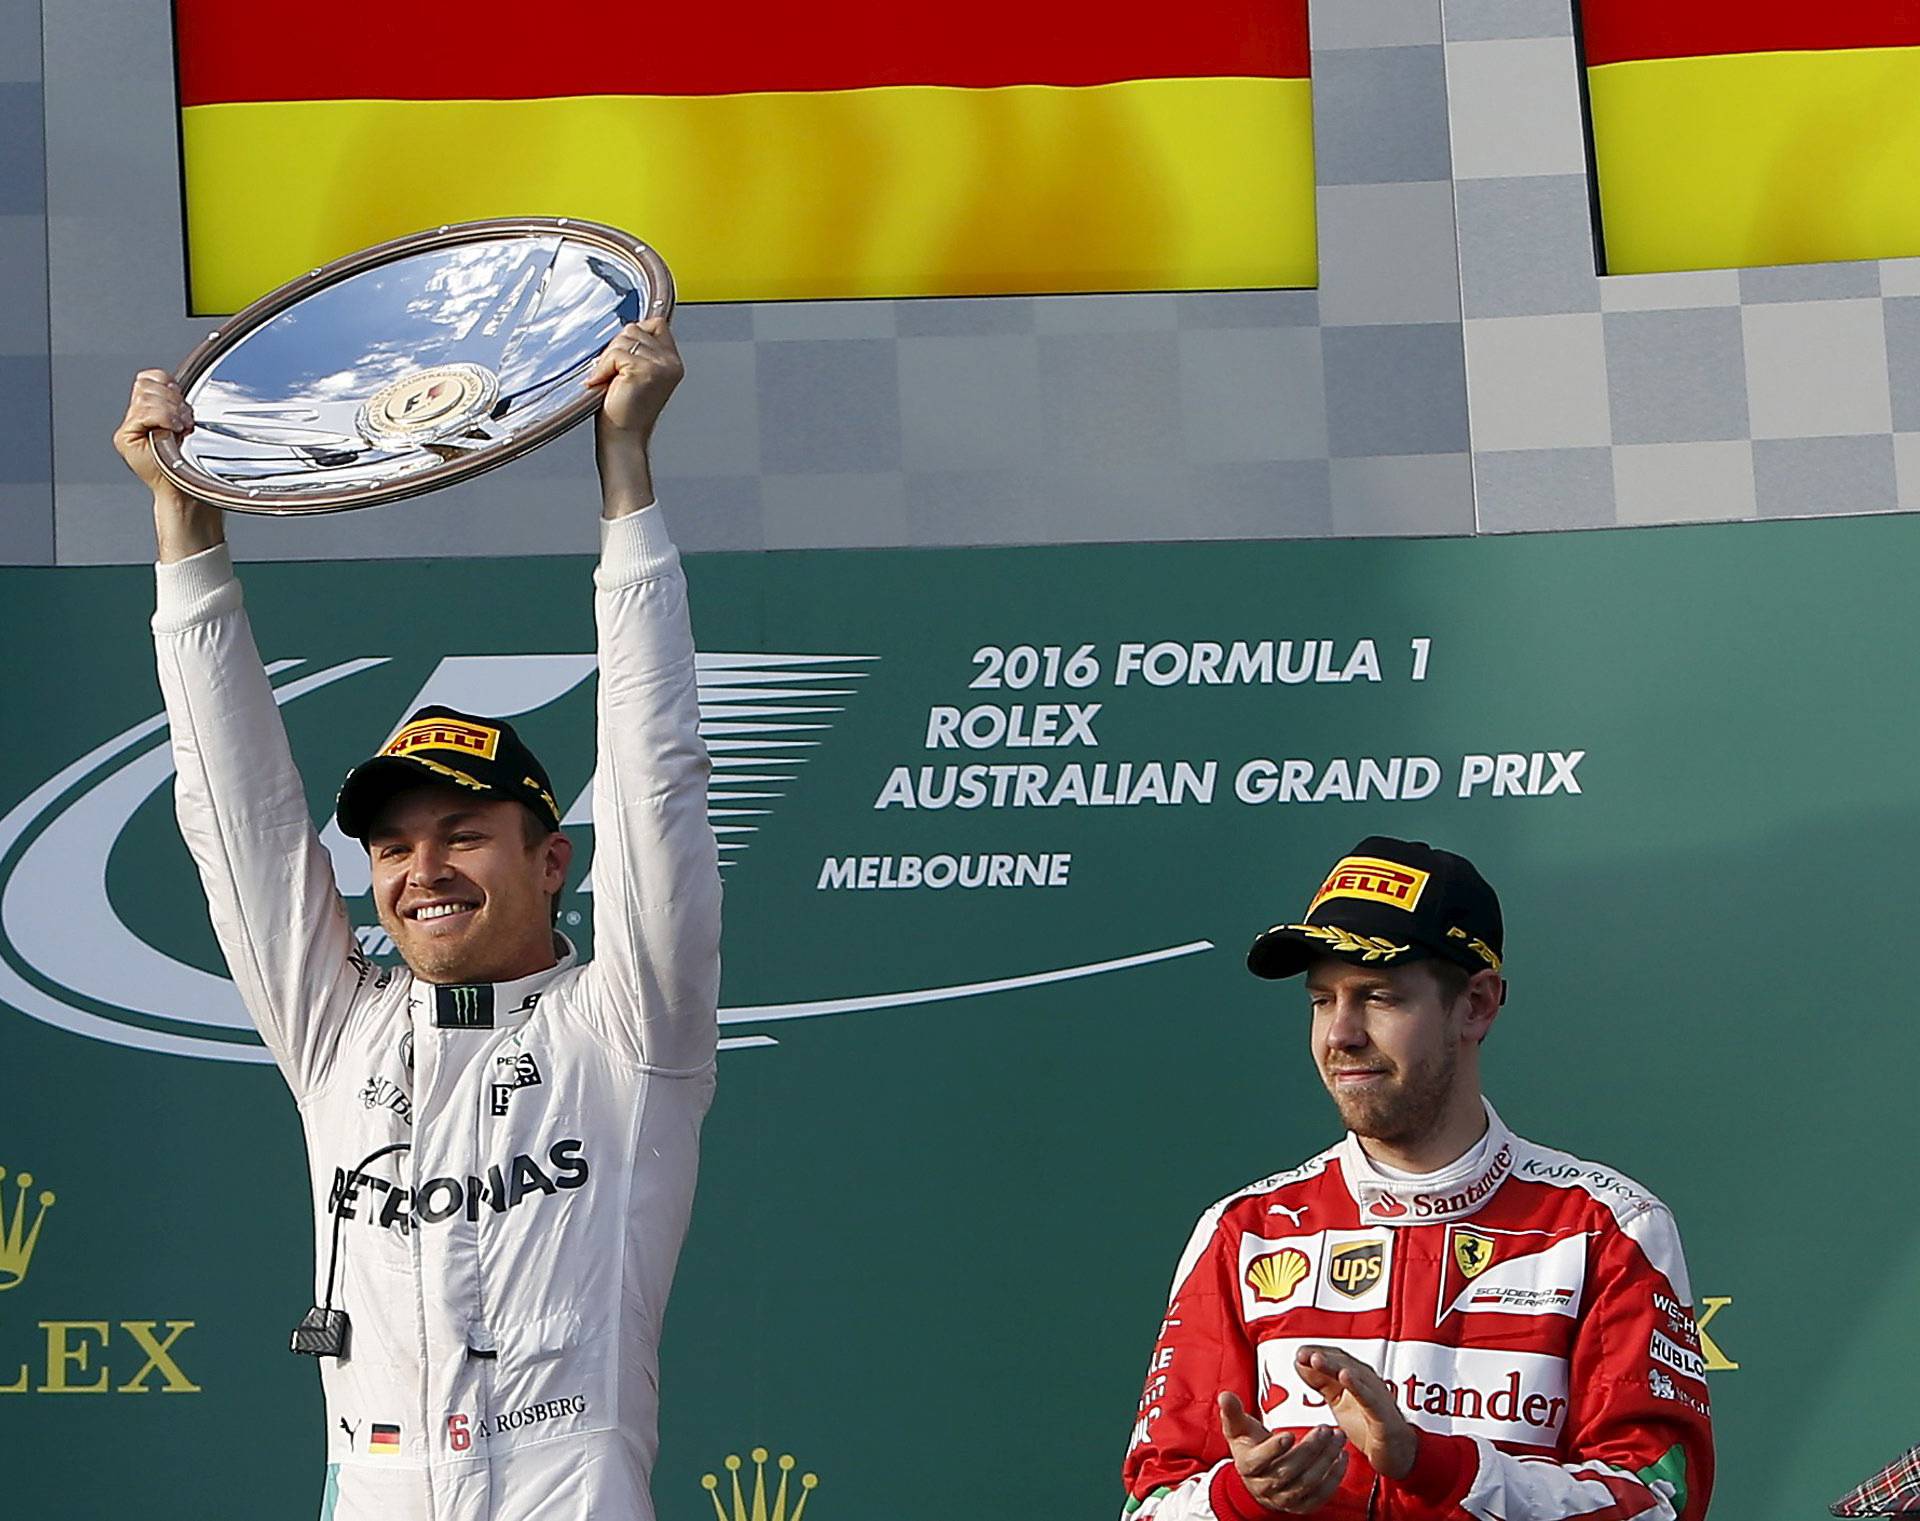 N. Rosberg slavio u Australiji, stravična nesreća F. Alonsa...